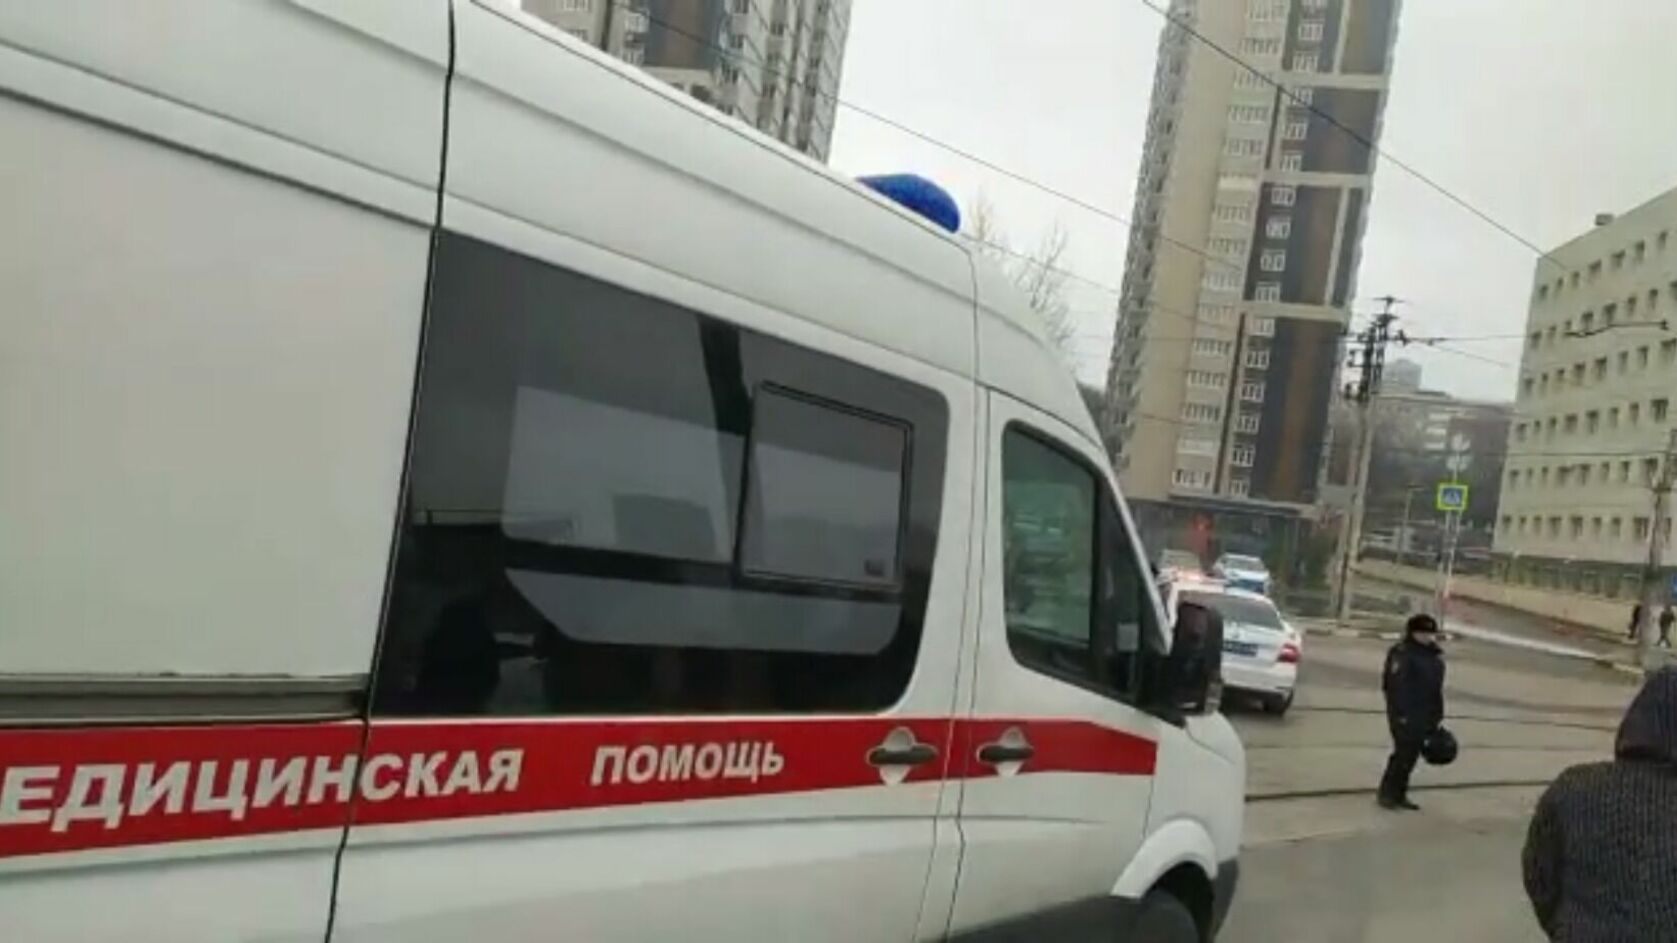 Стали известны подробности гибели сотрудника пиццерии при пожаре на Сиверса в Ростове